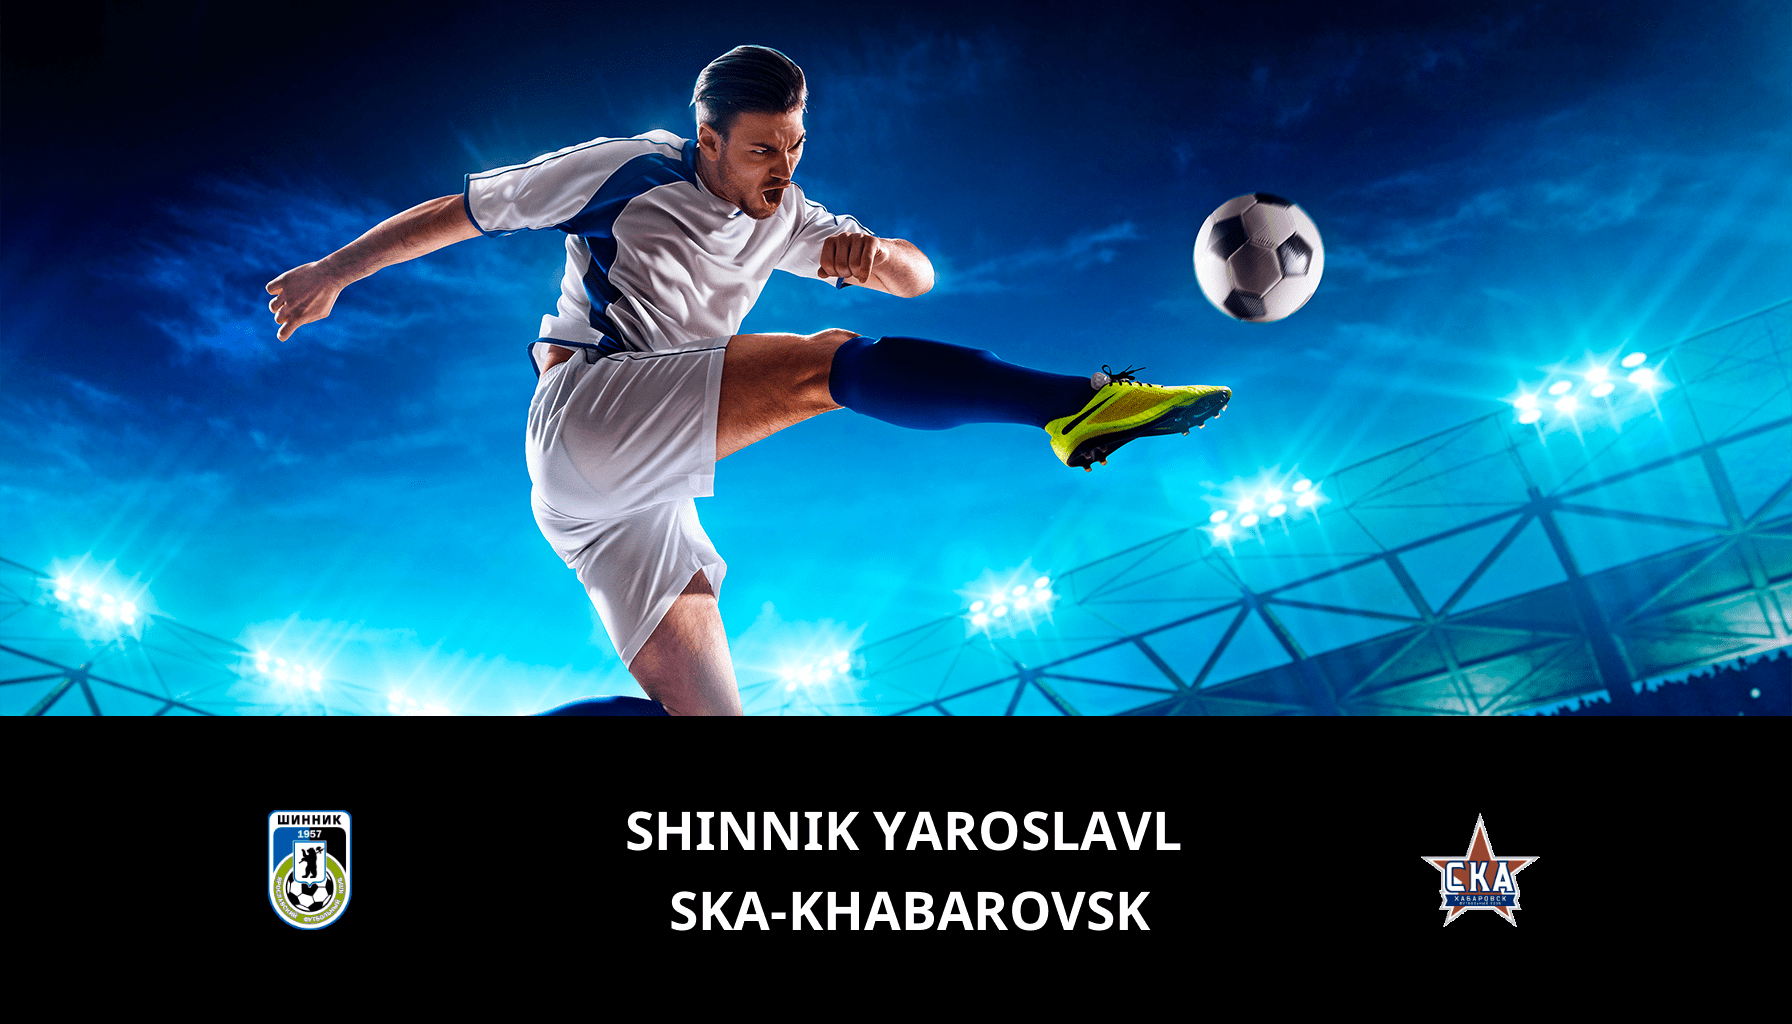 Previsione per Shinnik Yaroslavl VS Ska-khabarovsk il 12/05/2024 Analysis of the match